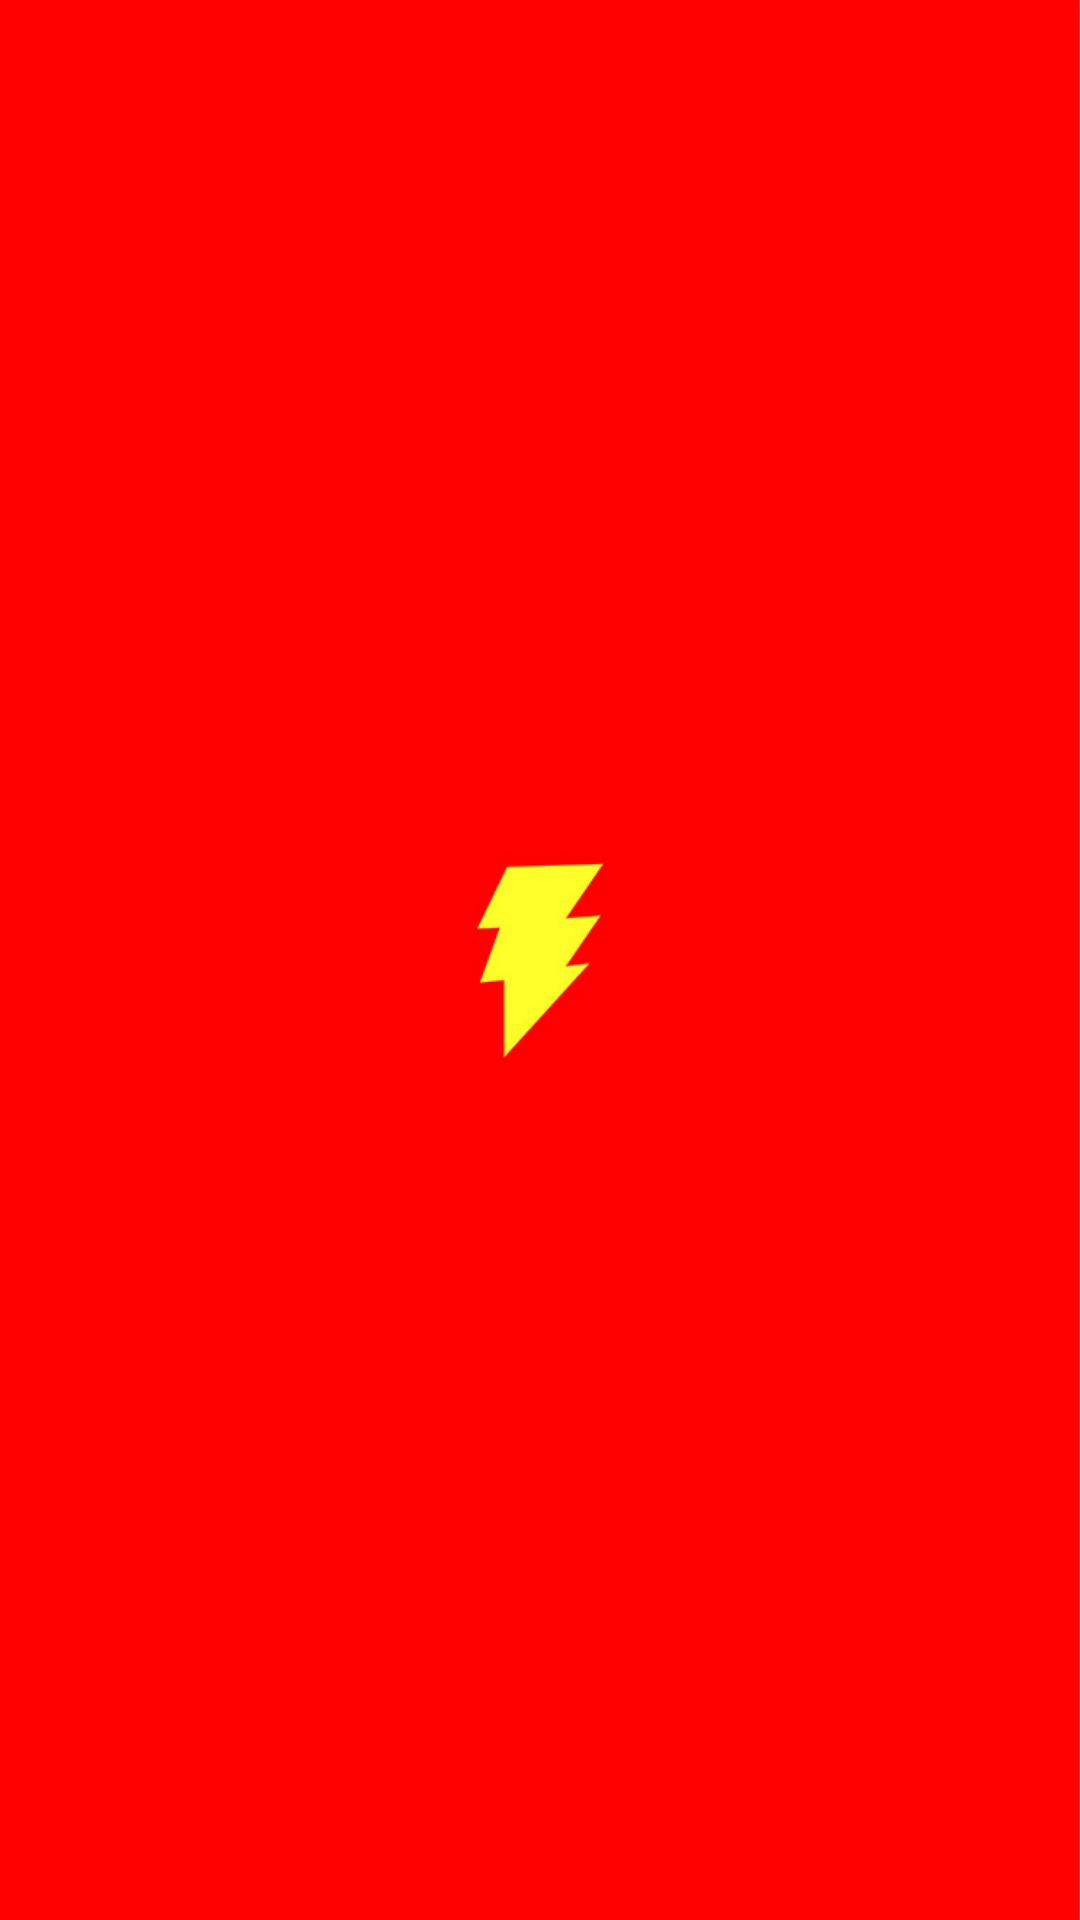 Flash Comic Hero Minimal Red Art Logo iPhone 8 Wallpaper Free Download